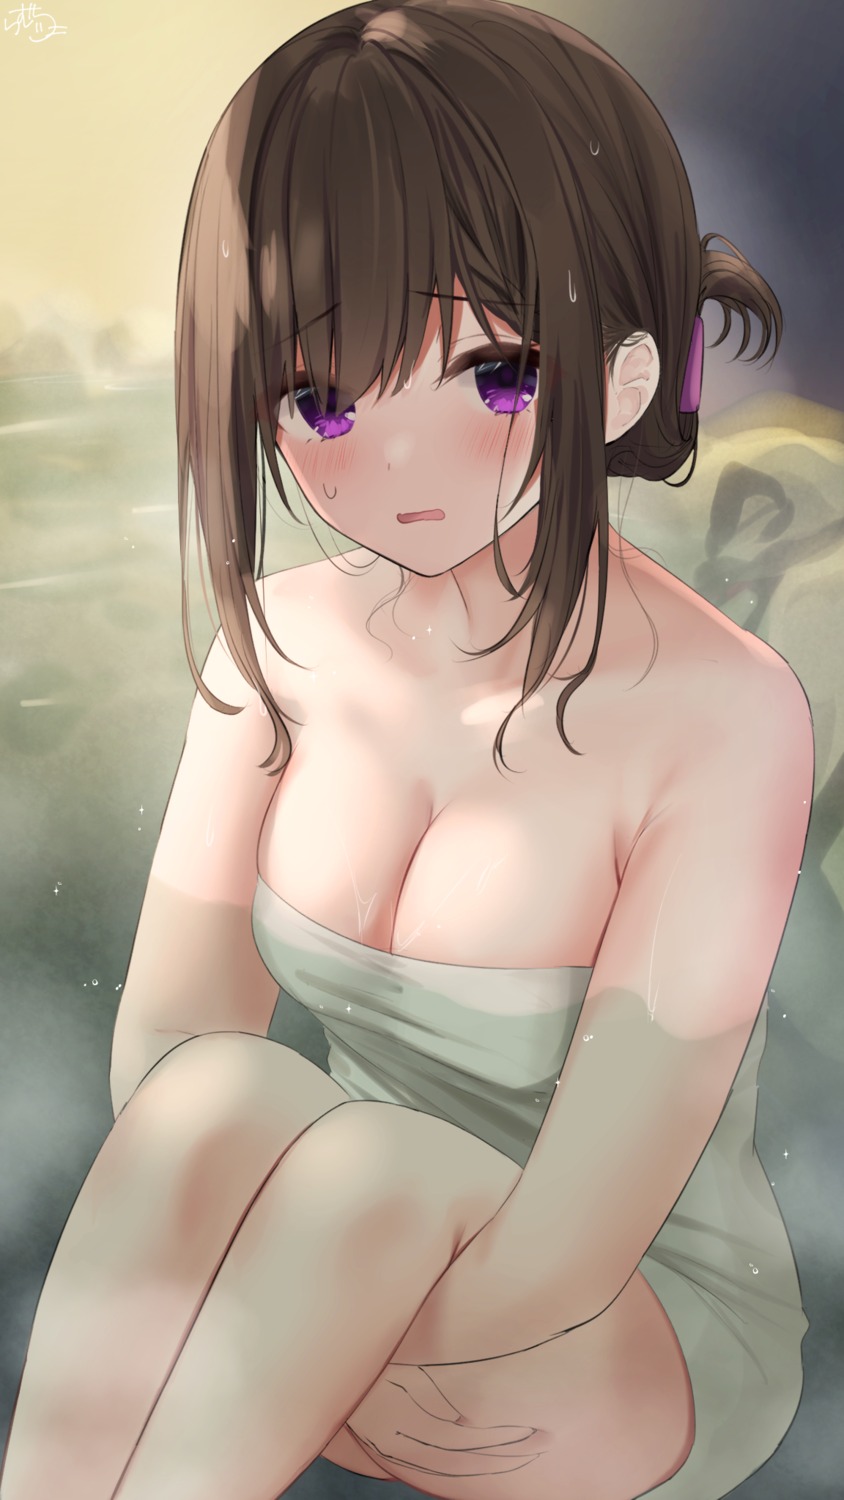 bathing onsen ramchi towel wet